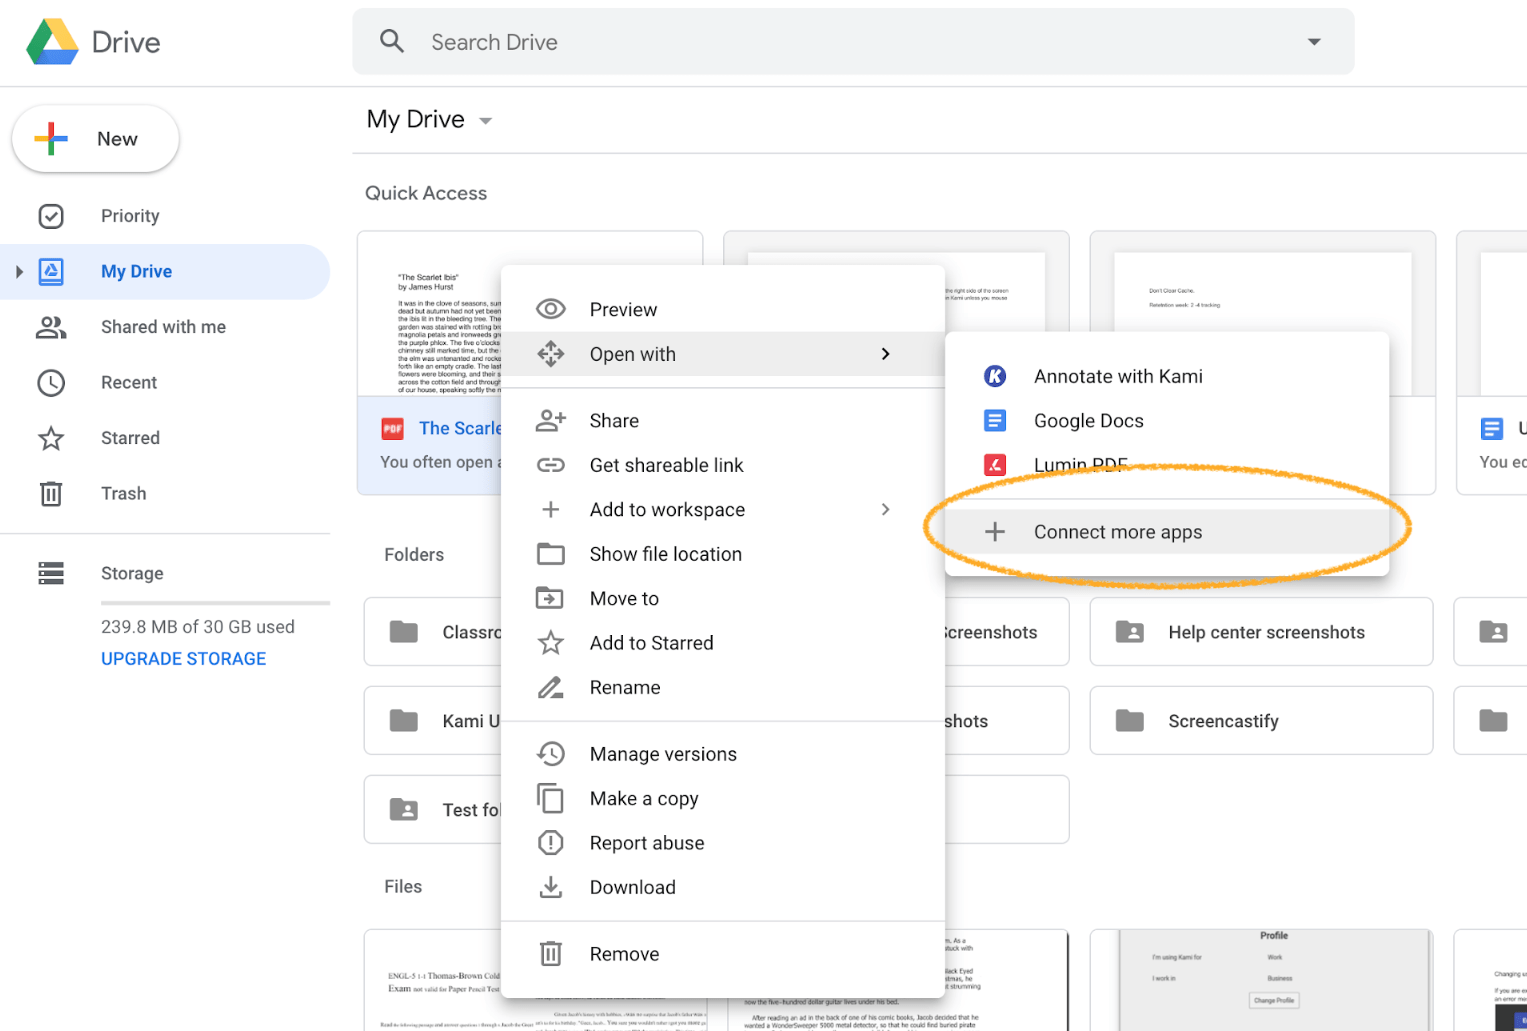 Conecta más aplicaciones en Google Drive